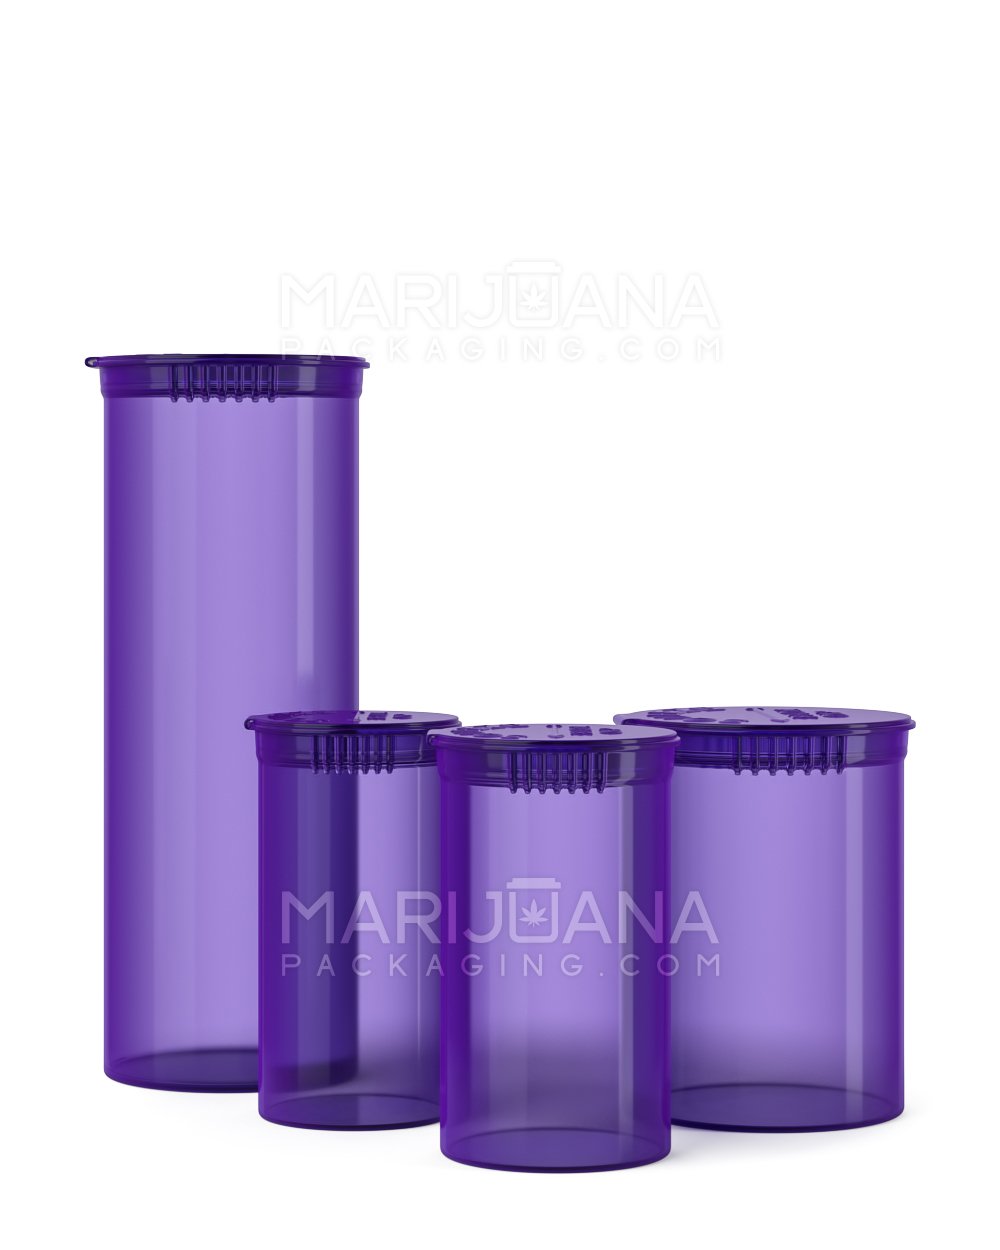 Child Resistant | Transparent Purple Pop Top Bottles | 30dr - 7g - 150 Count - 5